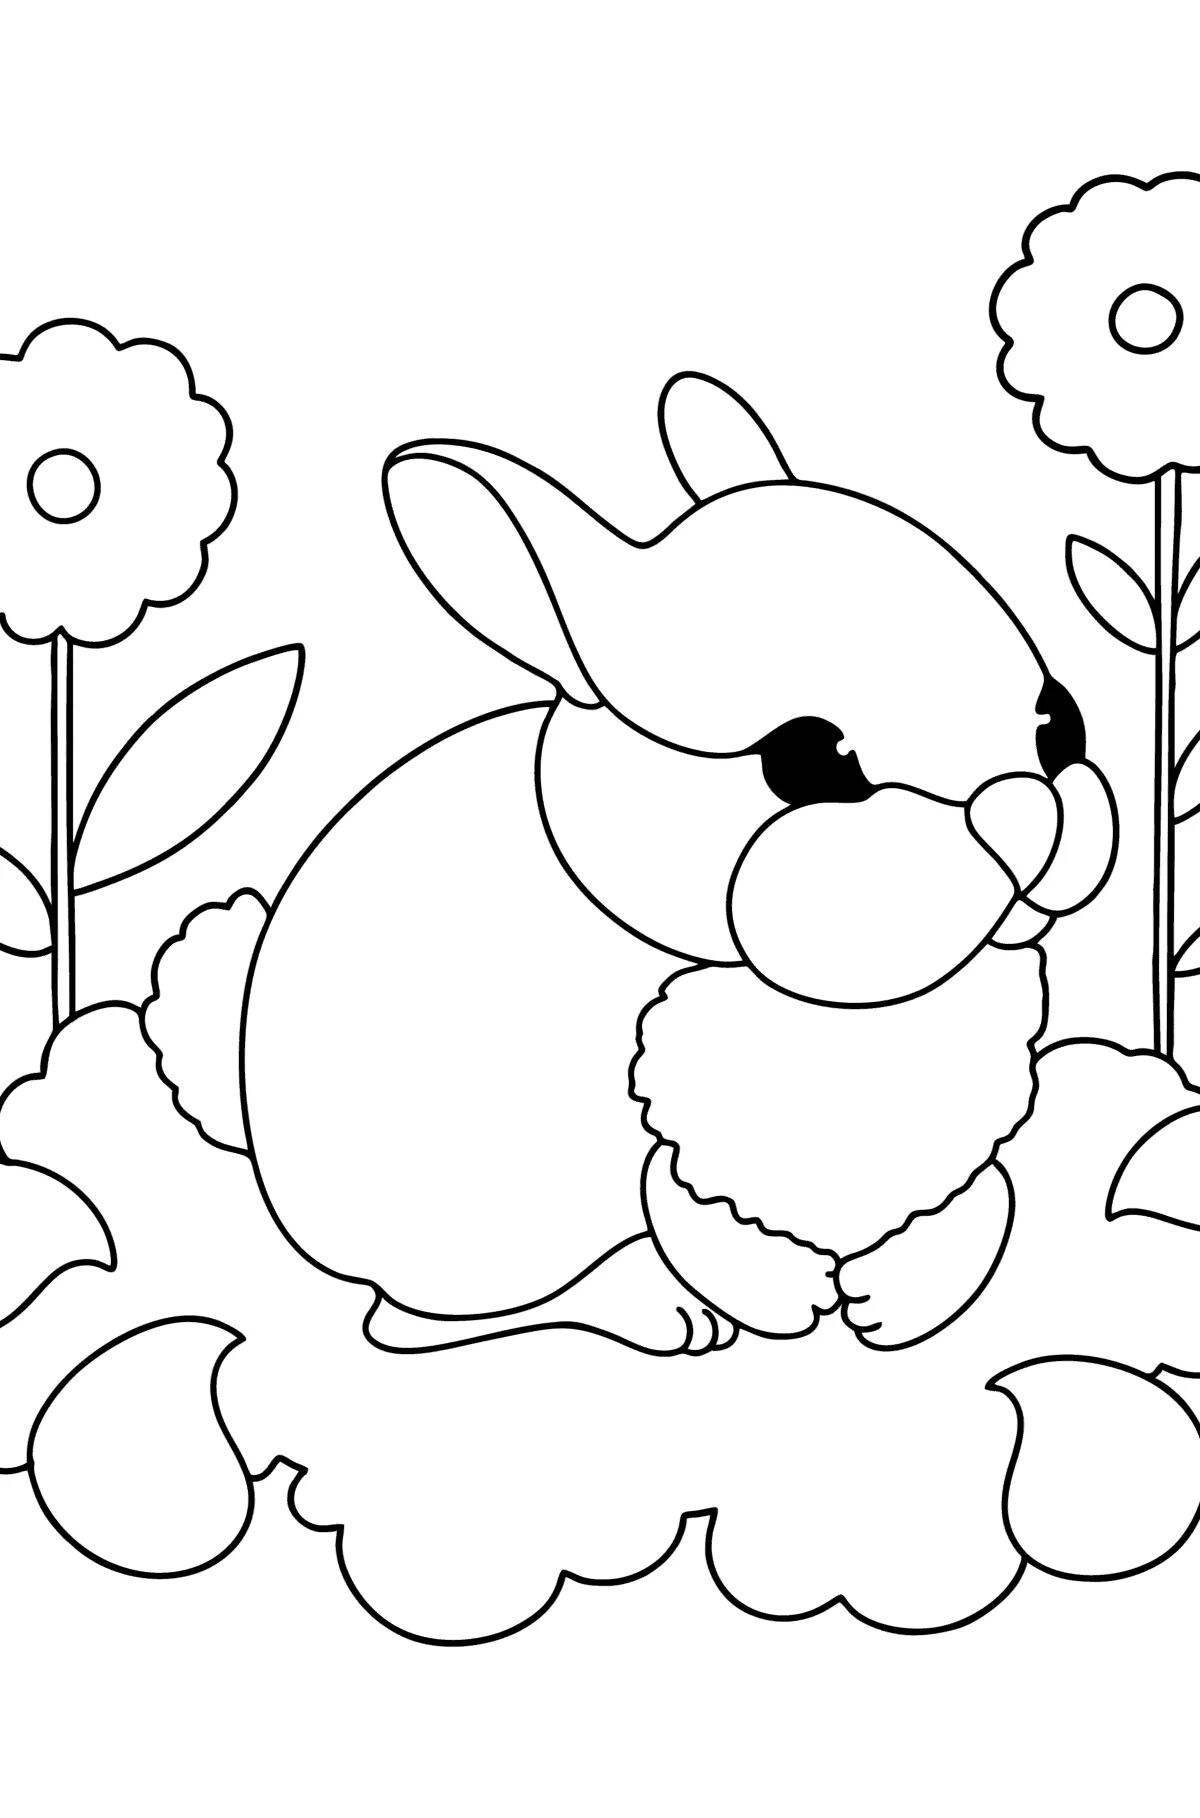 Веселая раскраска кролик для детей 2-3 лет